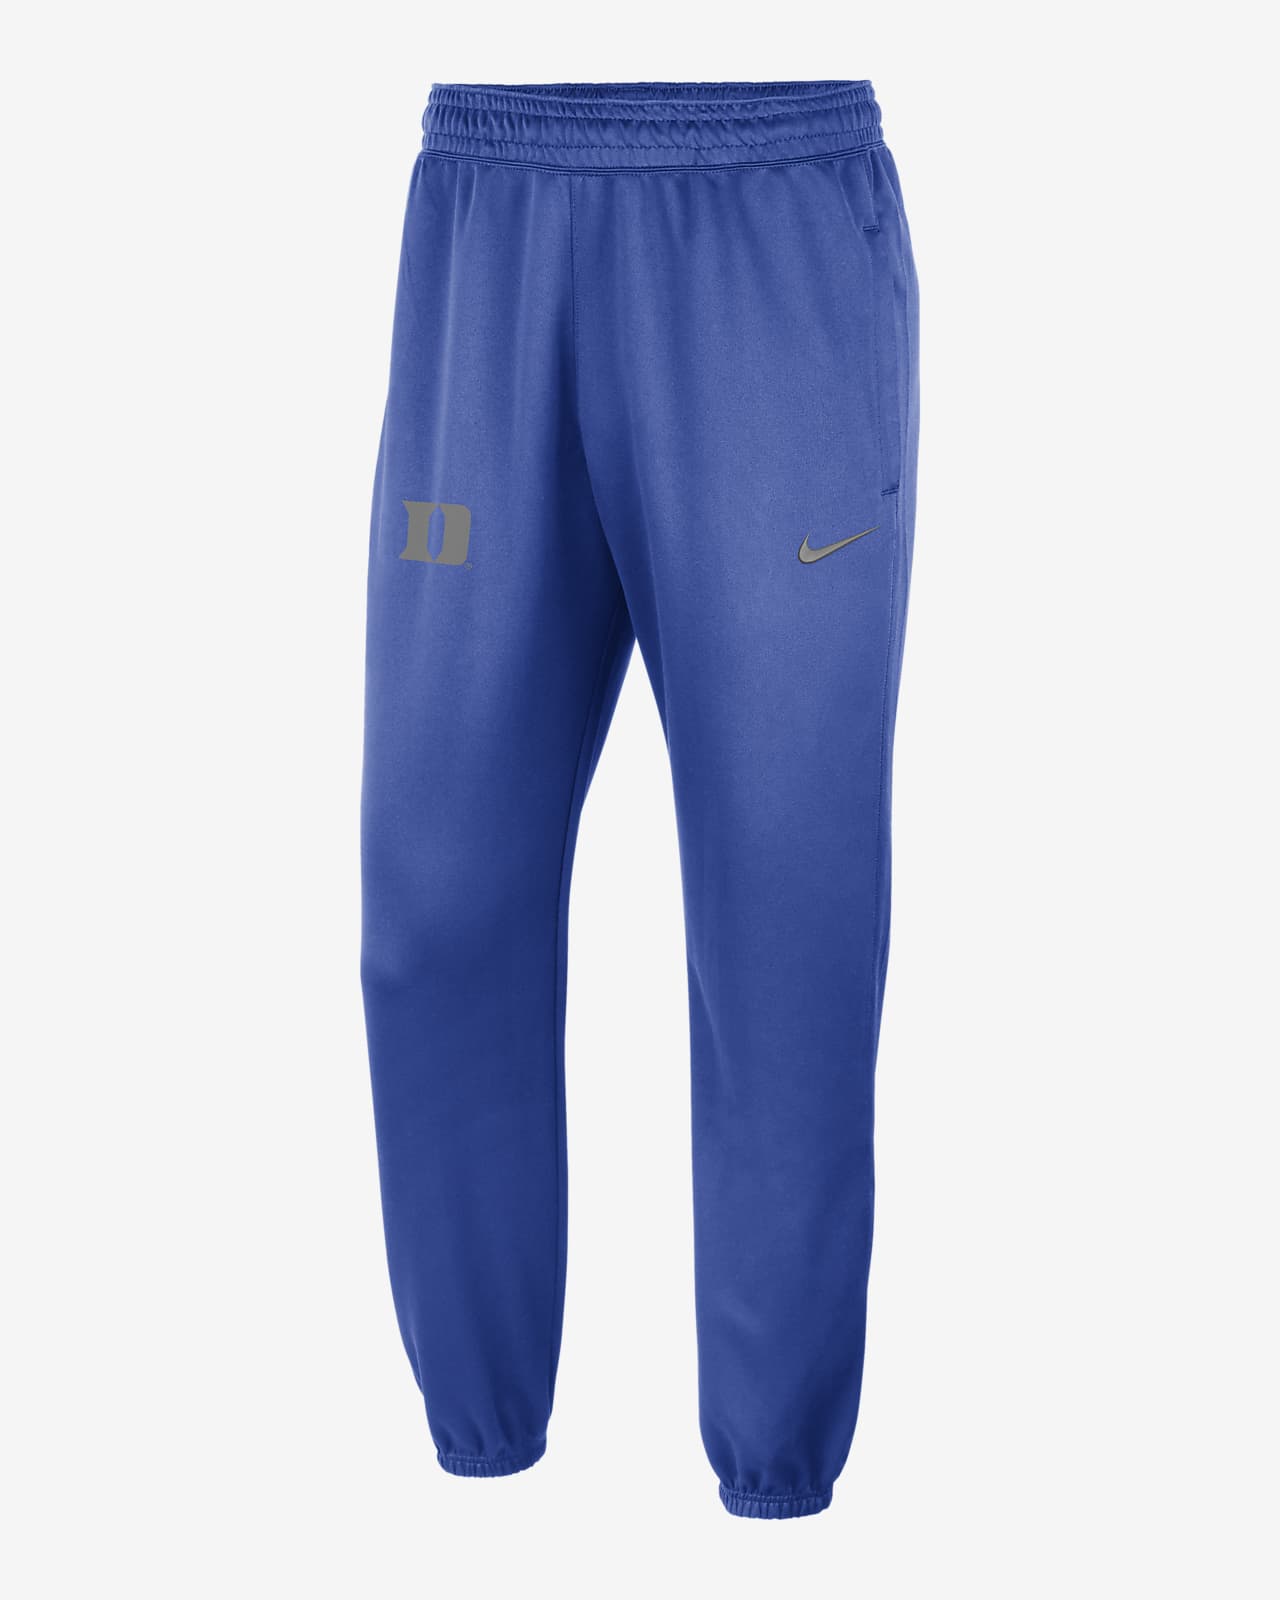 Nike College Dri-FIT Spotlight (Duke) Men's Pants